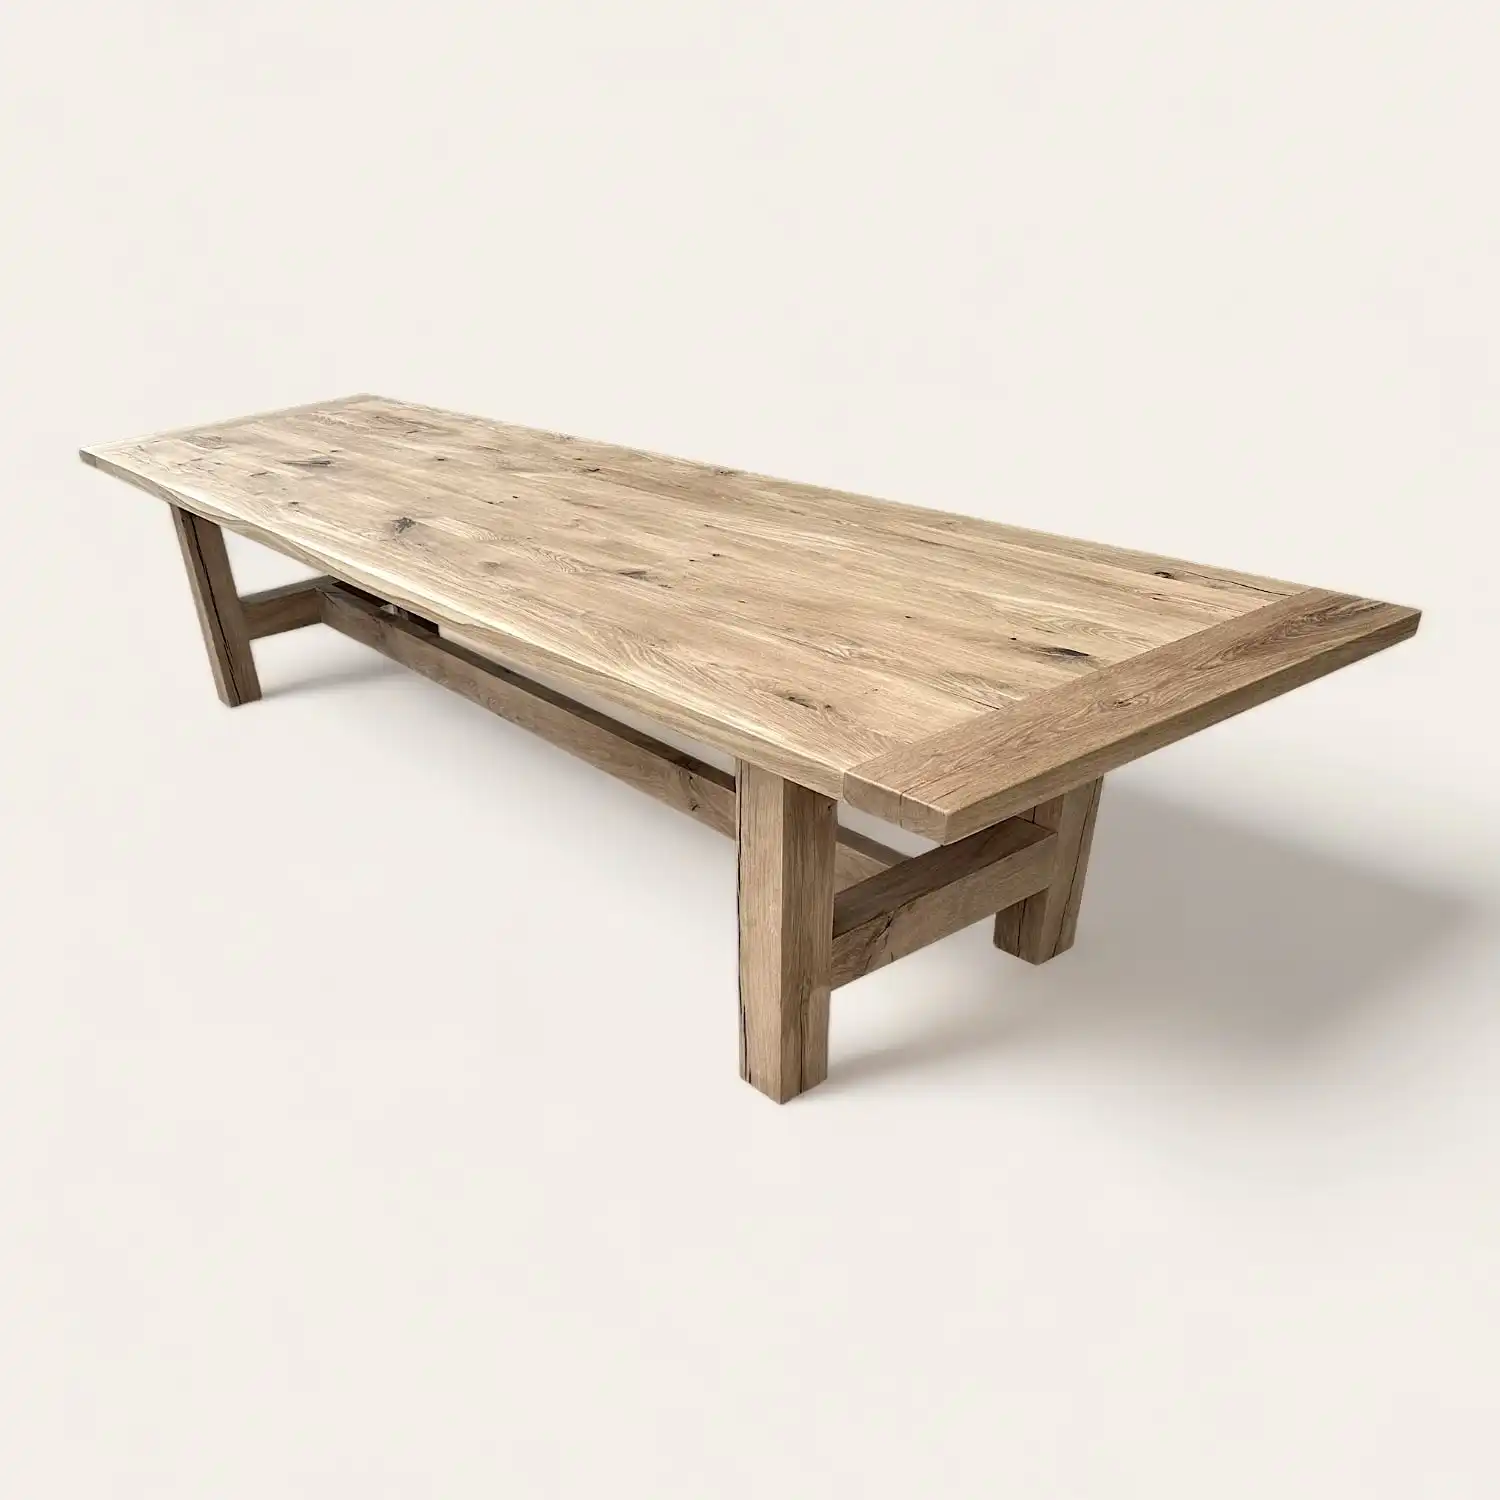  Une table à manger rustique en bois massif sur fond blanc. 